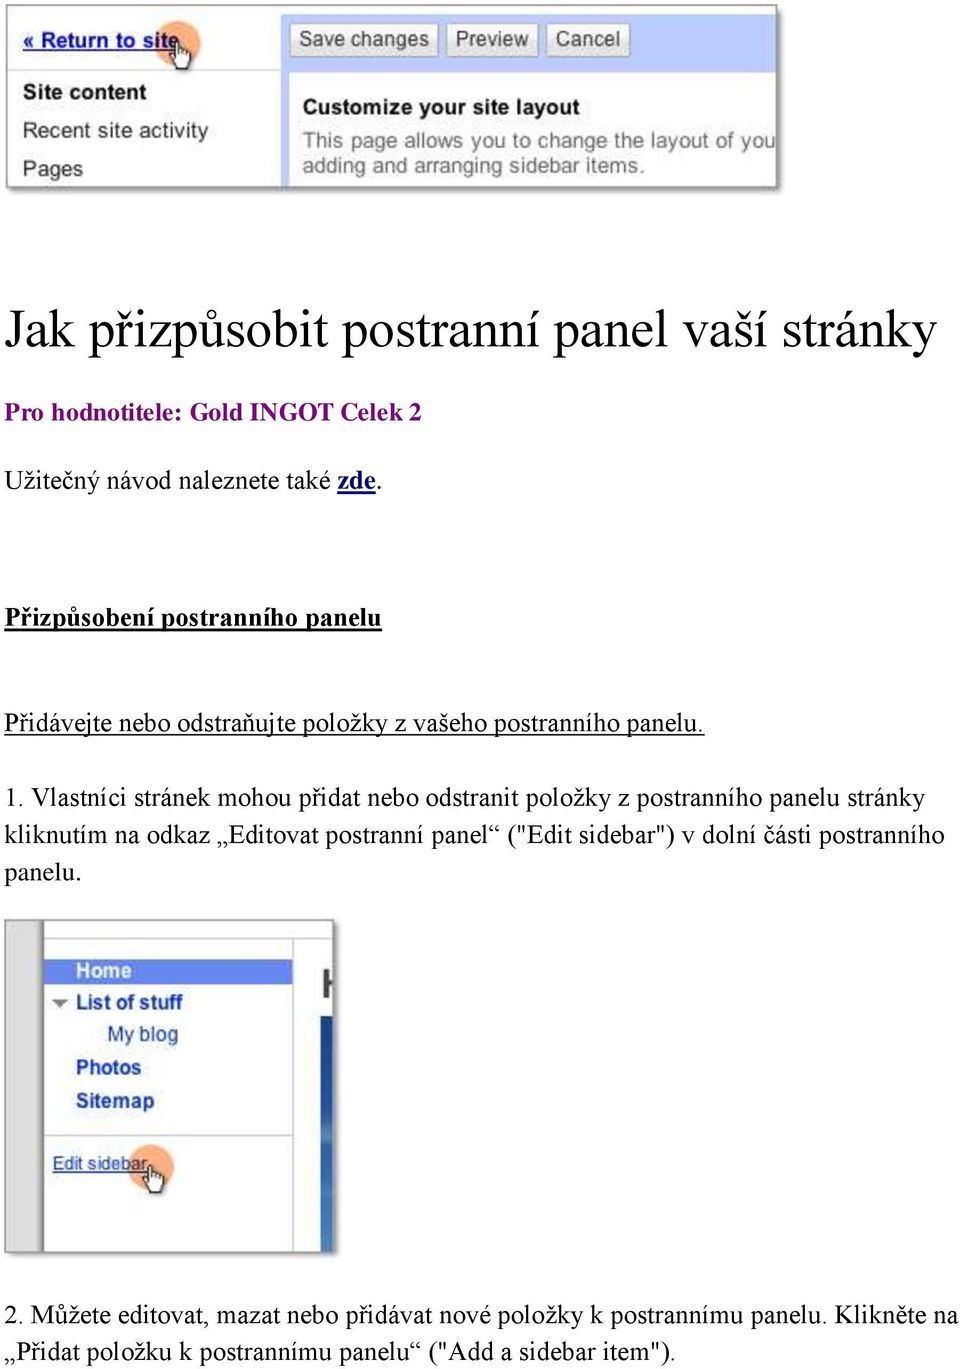 Vlastníci stránek mohou přidat nebo odstranit položky z postranního panelu stránky kliknutím na odkaz Editovat postranní panel ("Edit